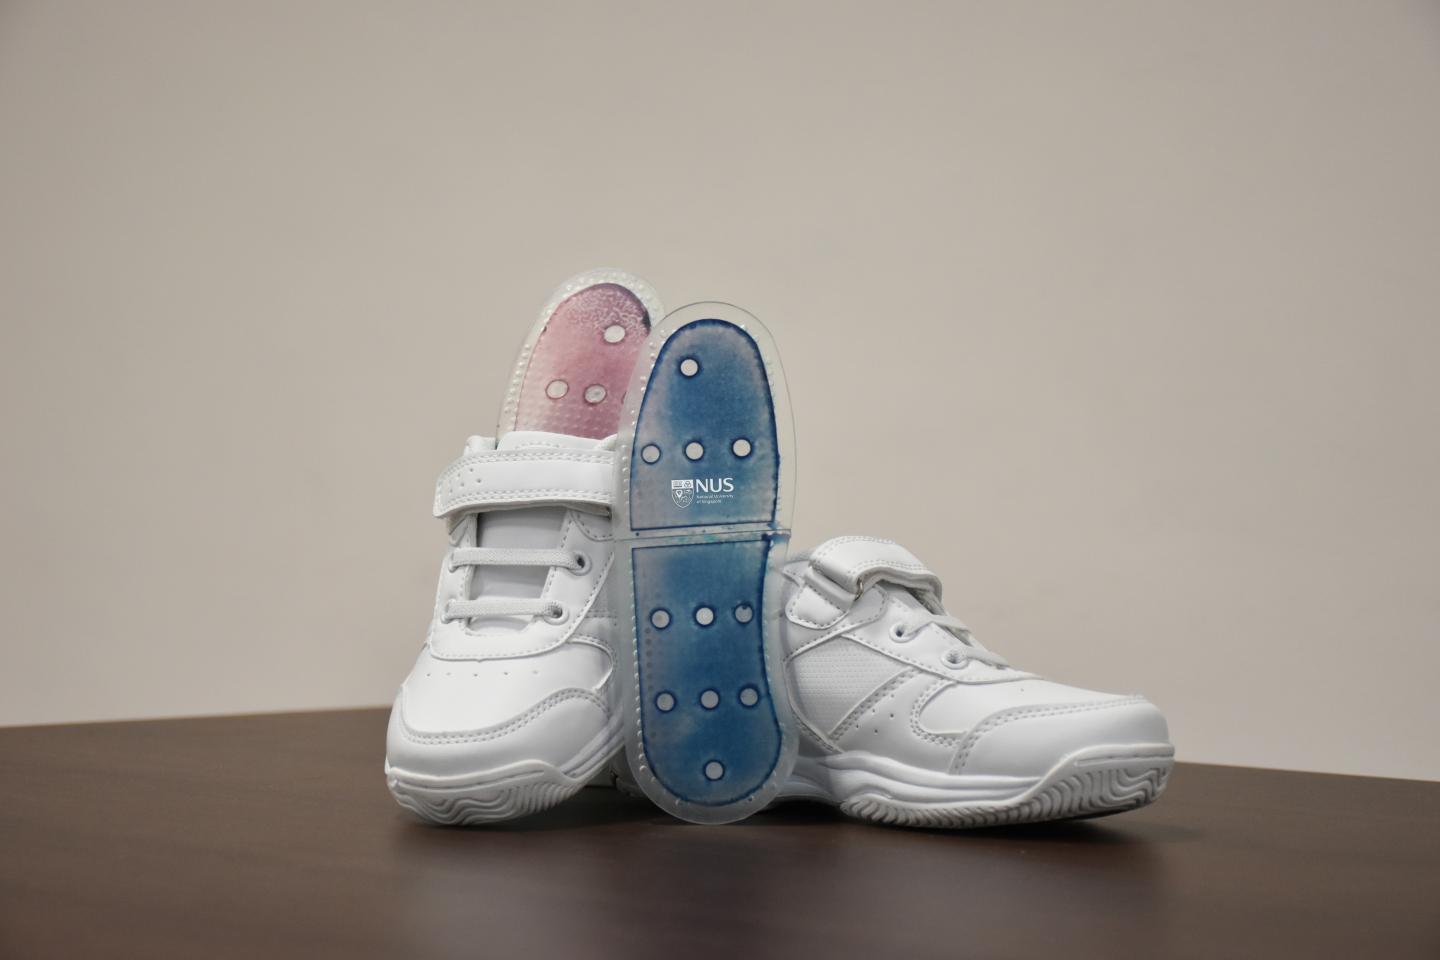 鞋底原型涂有新的薄膜，因为它吸收了水分，从而从蓝色变为粉红色。图像通过nus。